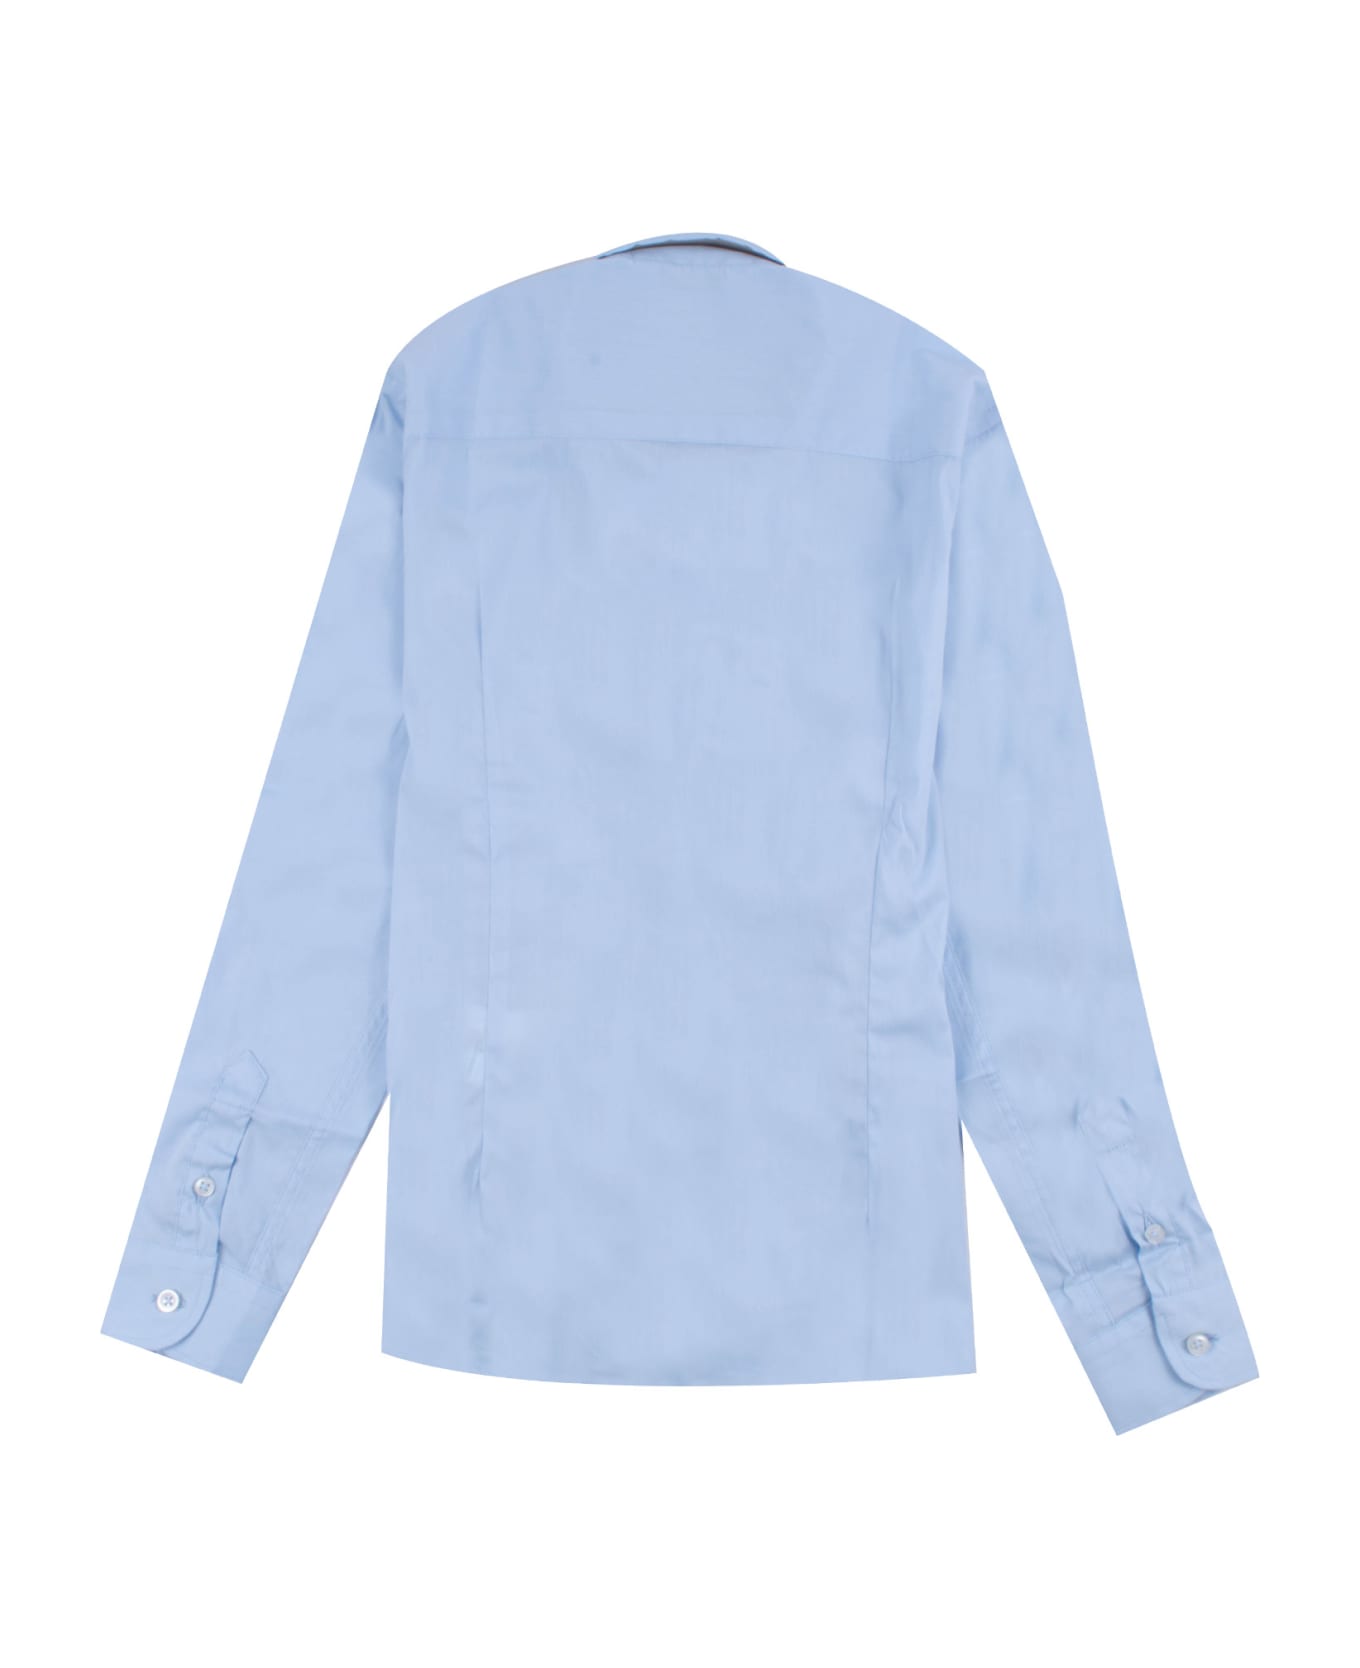 Manuel Ritz Cotton Shirt - Light blue